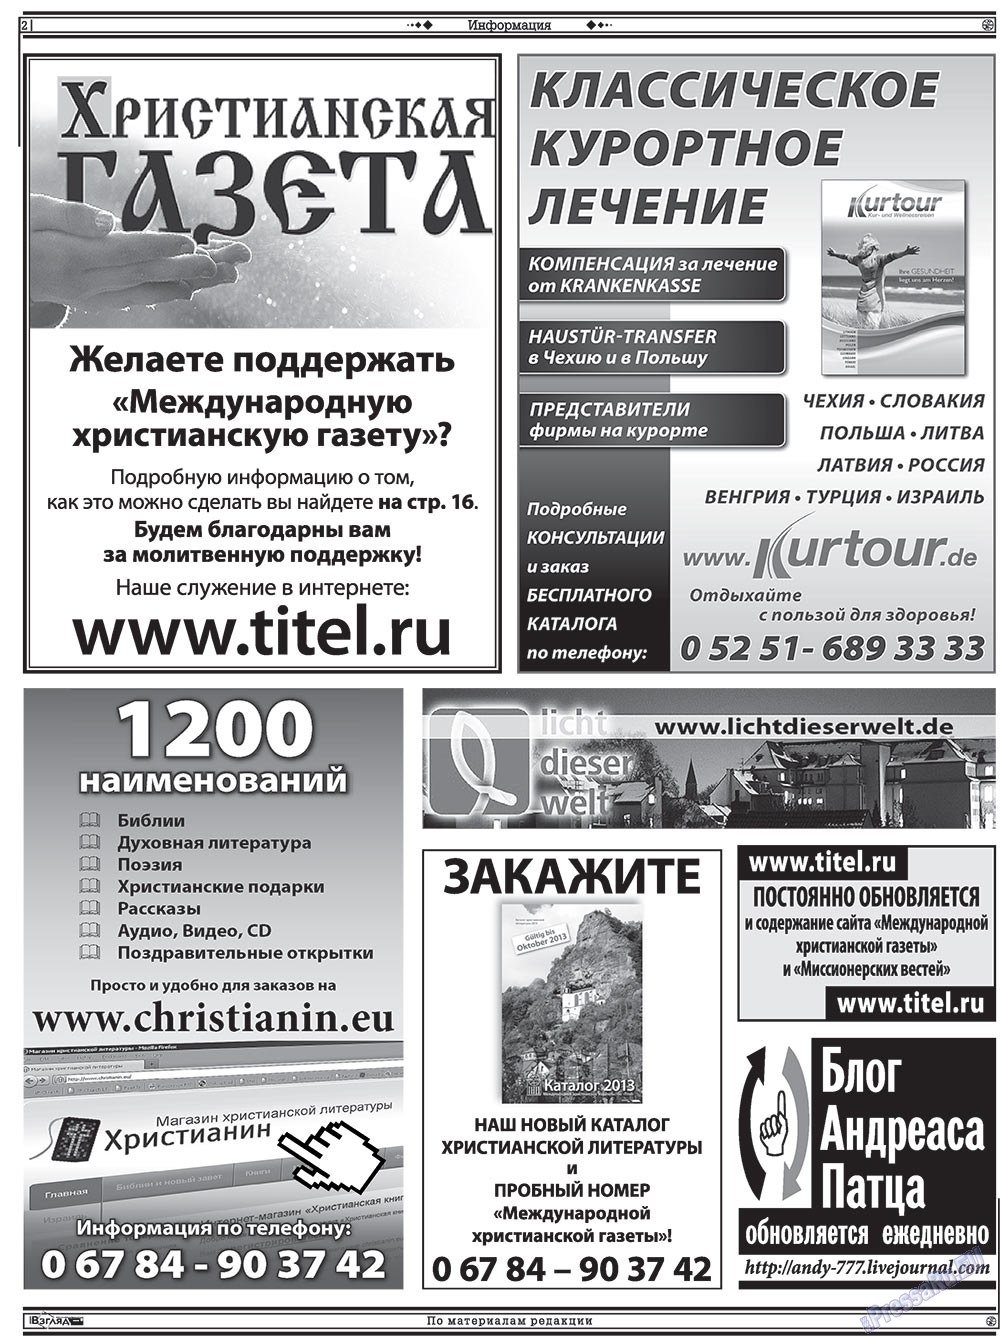 Христианская газета (газета). 2013 год, номер 1, стр. 16